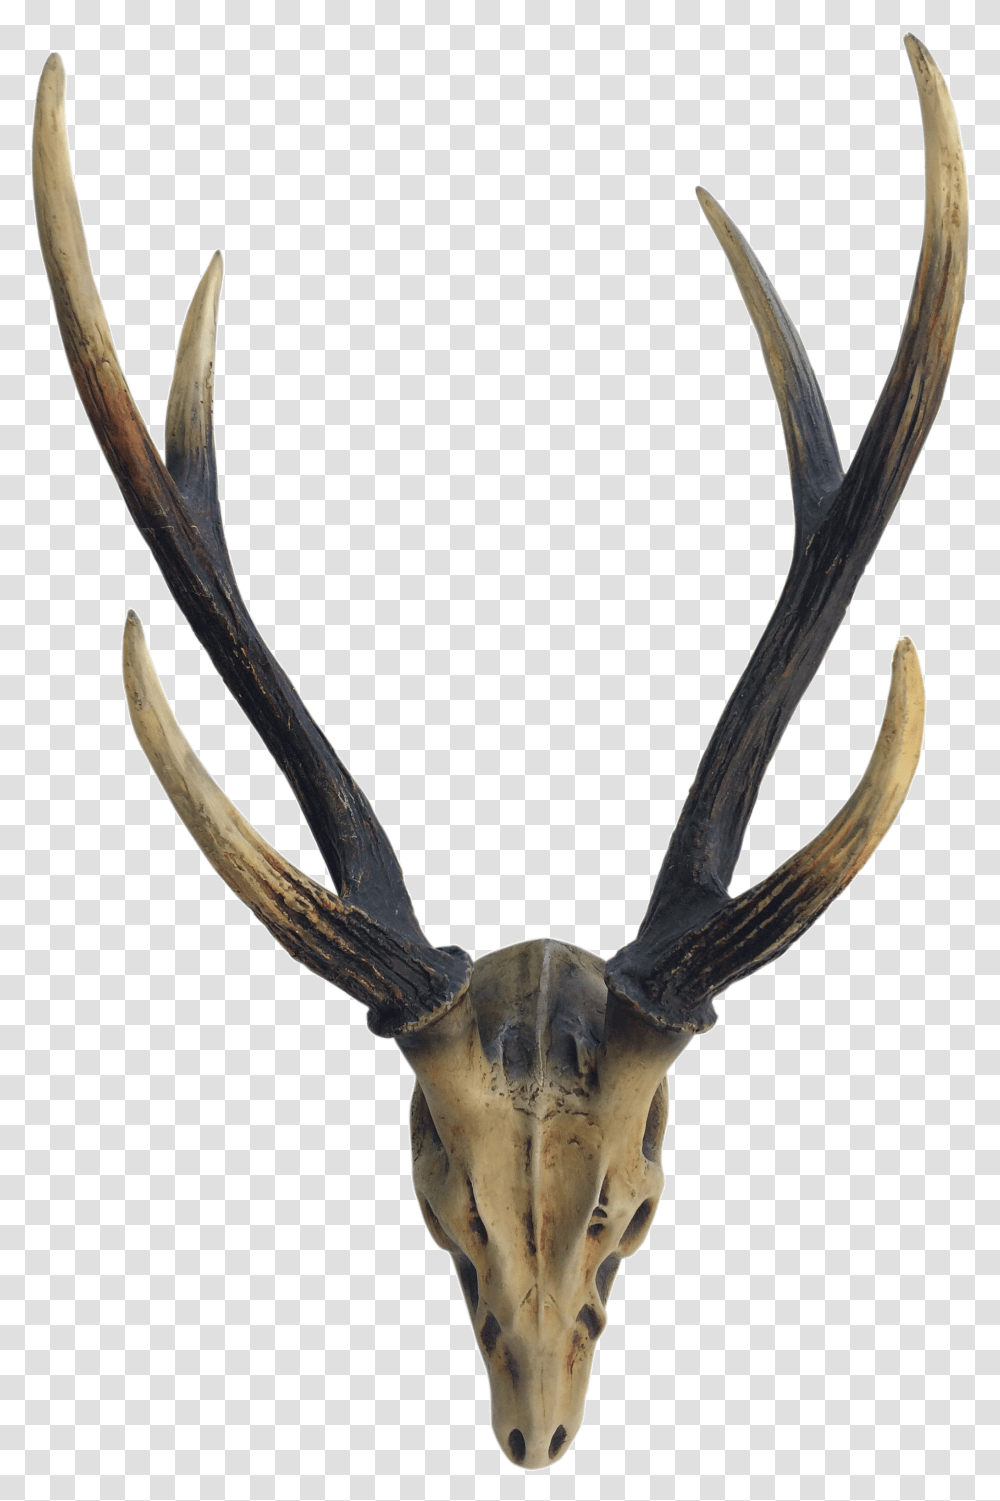 Elk Deer Horn Antler Image Reindeer, Antelope, Wildlife, Mammal, Animal Transparent Png